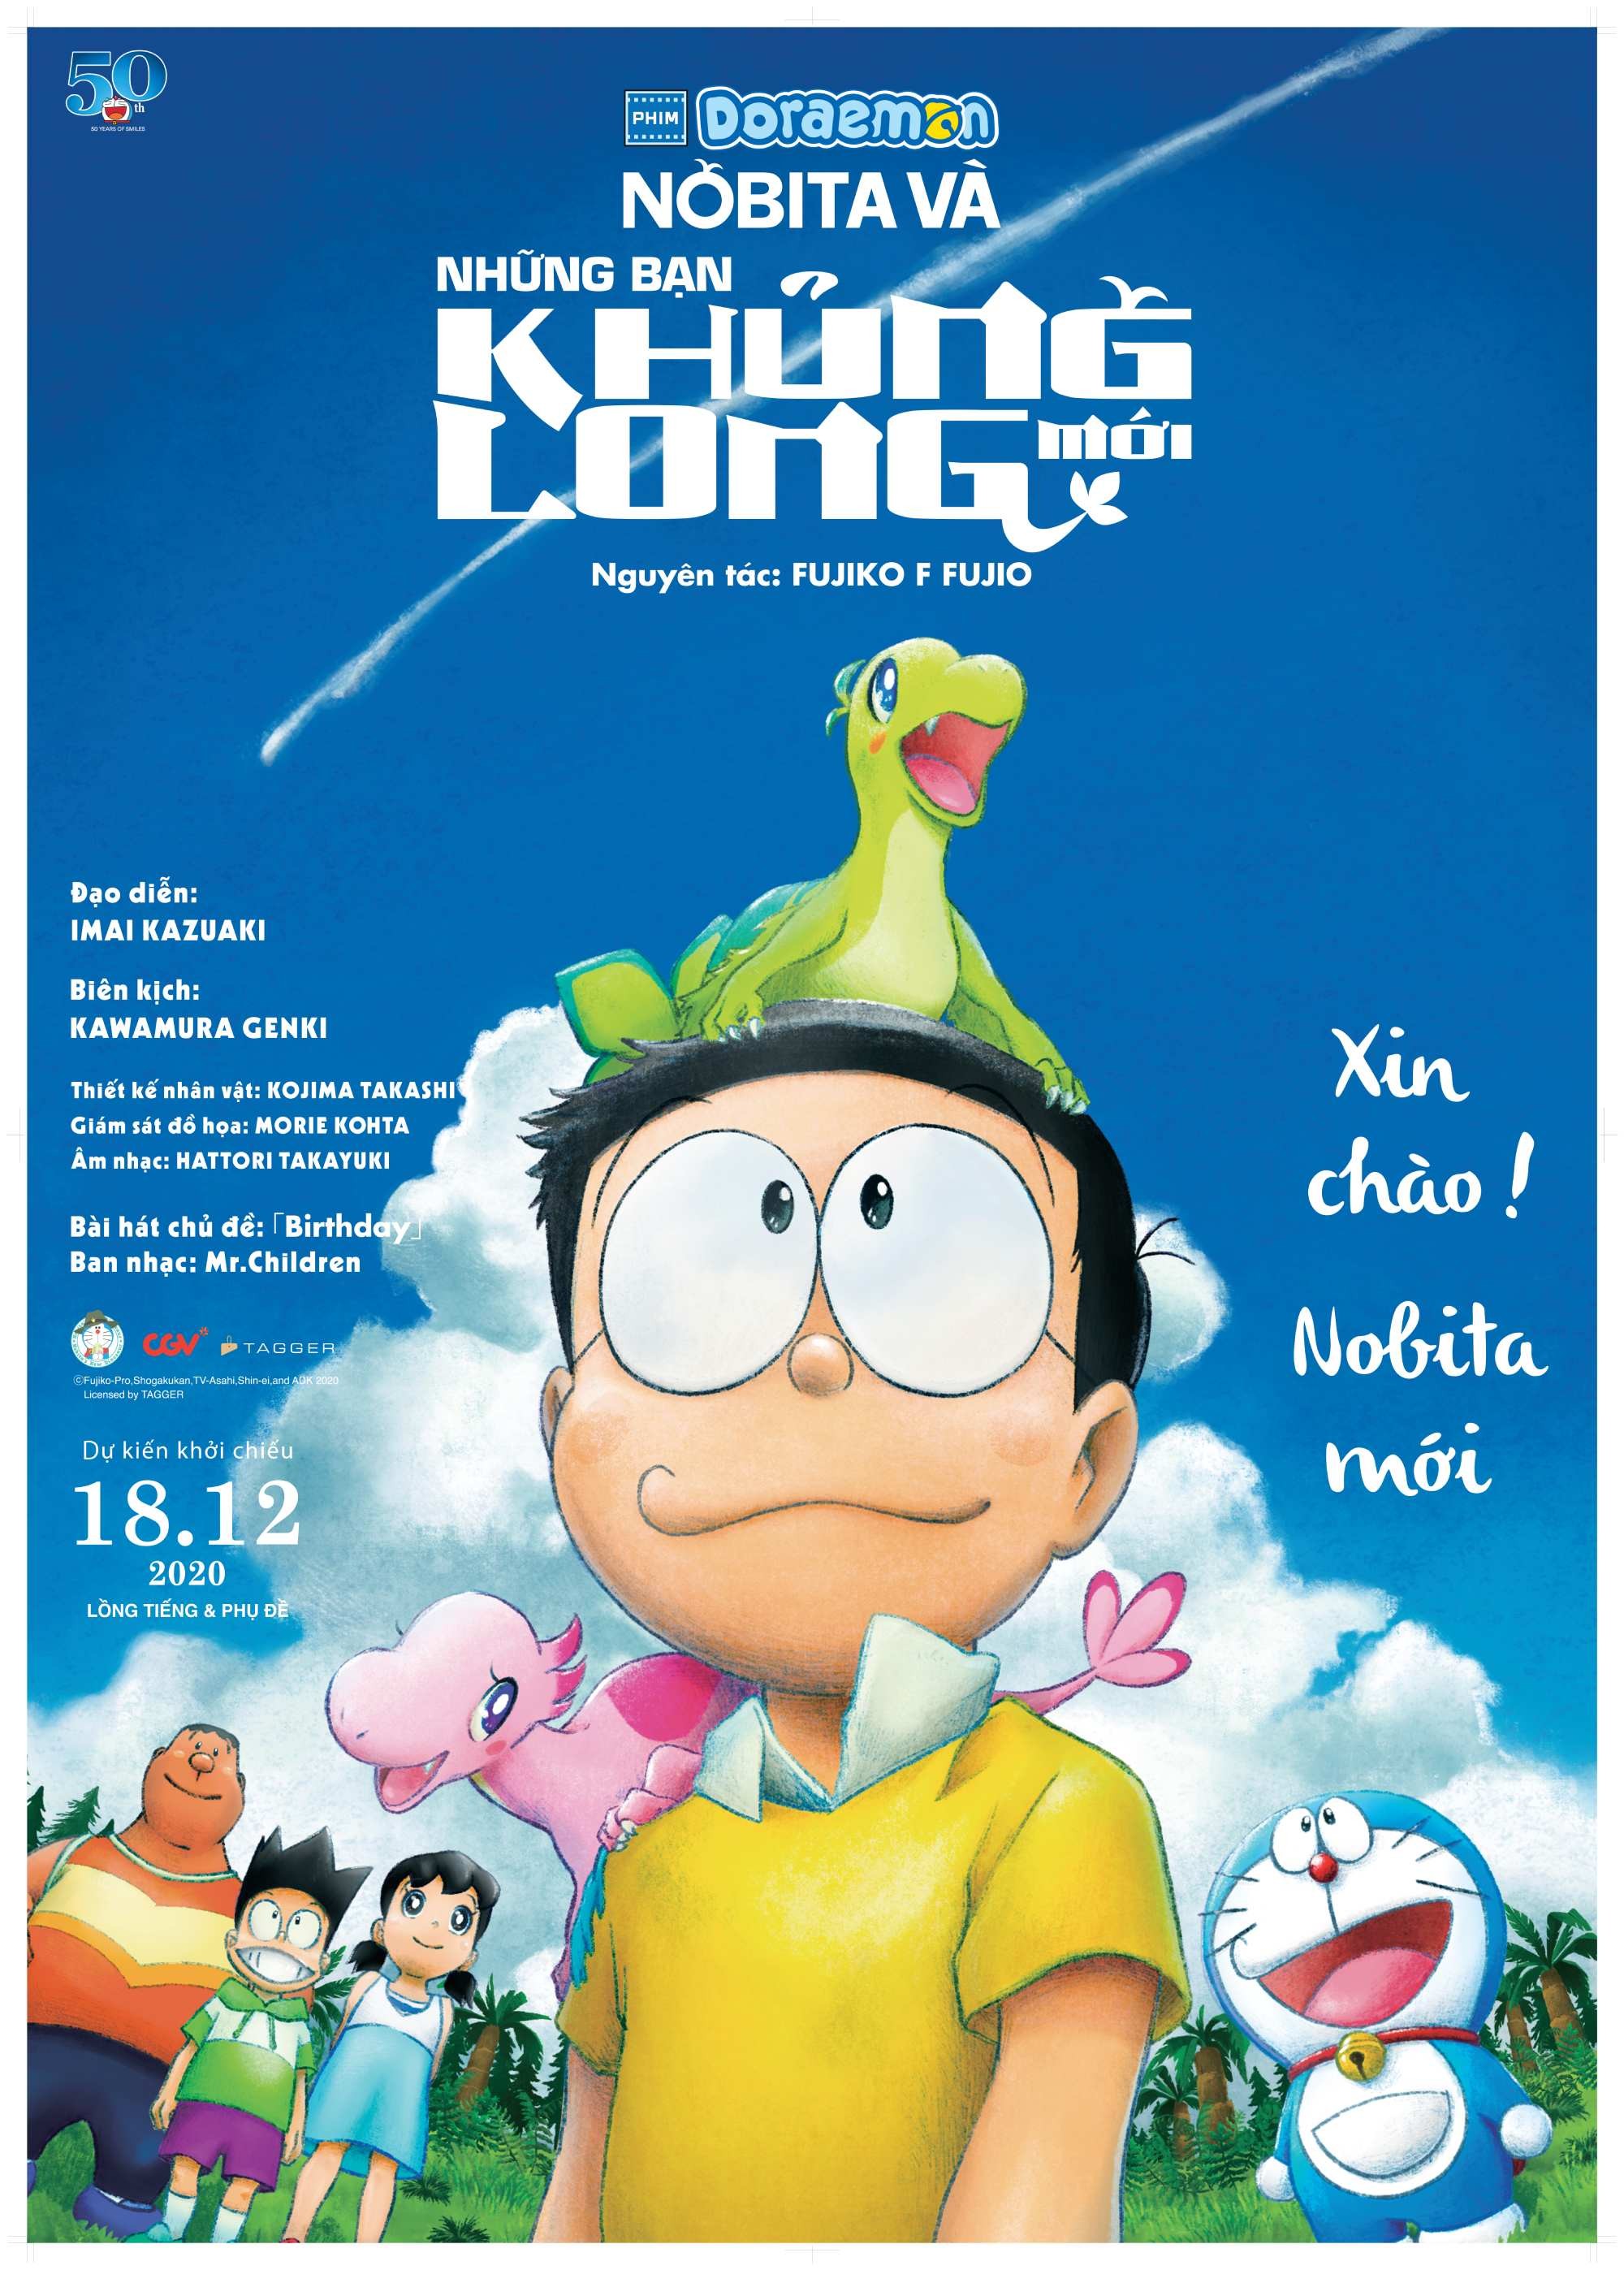 Đánh giá từ khán giả và chuyên gia về các phim Doraemon